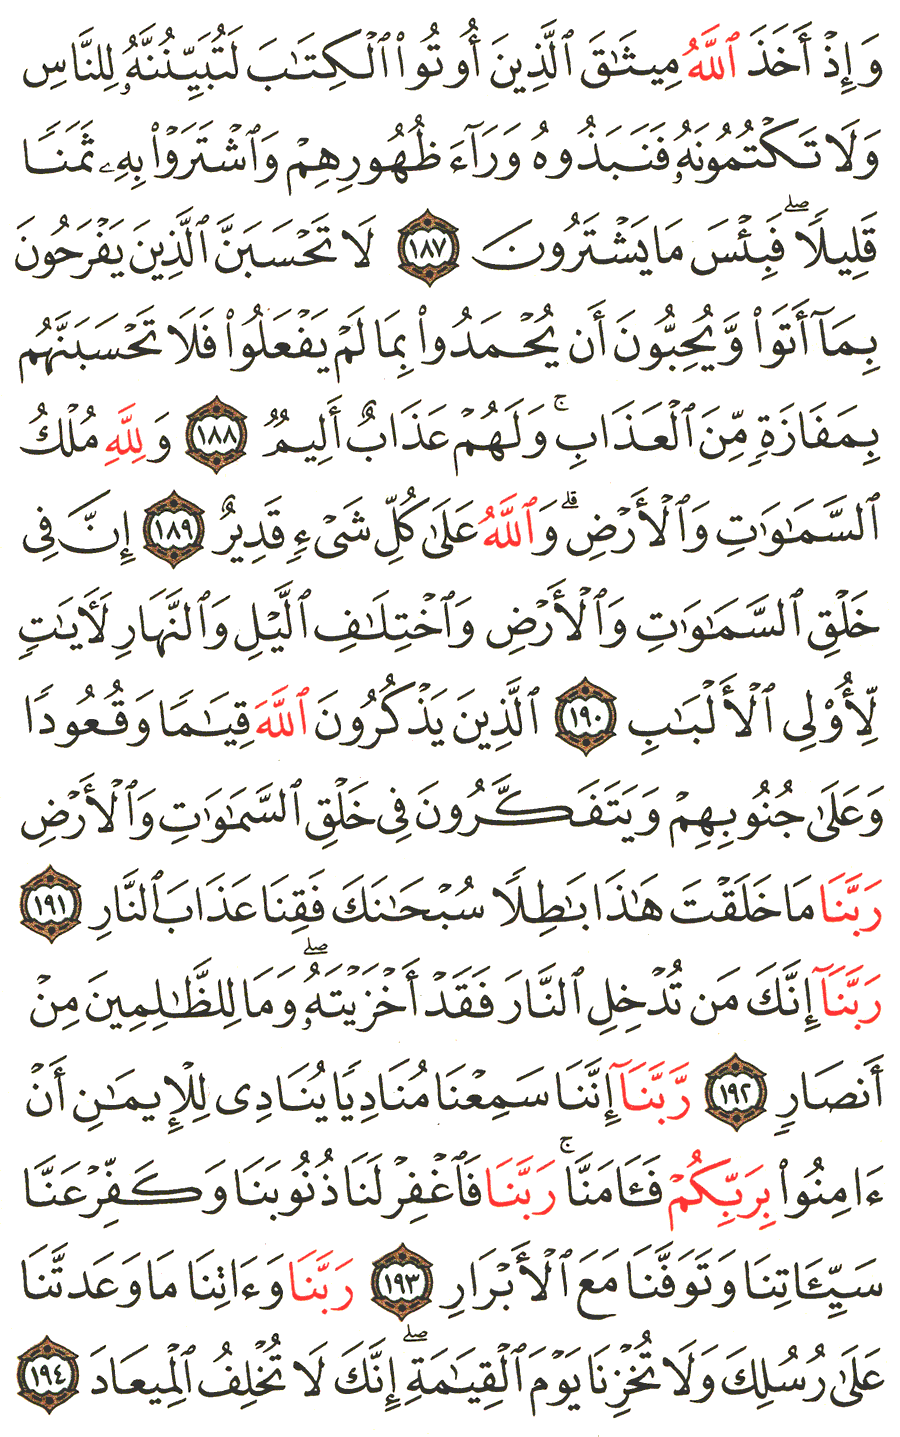 الصفحة رقم 75 من القرآن الكريم مكتوبة من المصحف